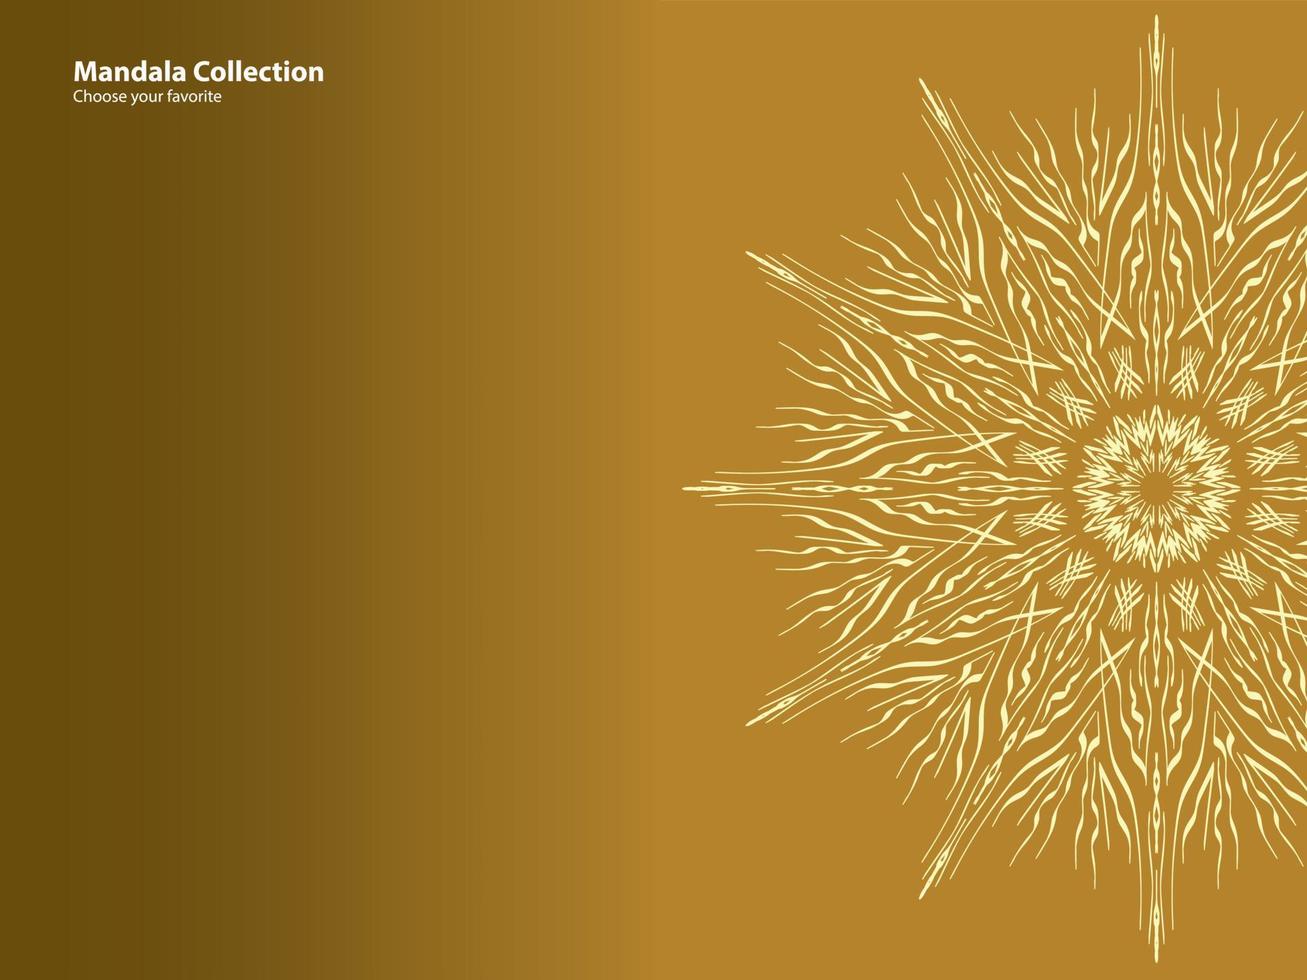 mandala patroon vintage etnisch stammen sjabloon stijl element behang achtergrond motief cirkel kunst textuur print traditioneel elegant rpund ornament tekening decoratie goud meditatie bloem aziatisch vector